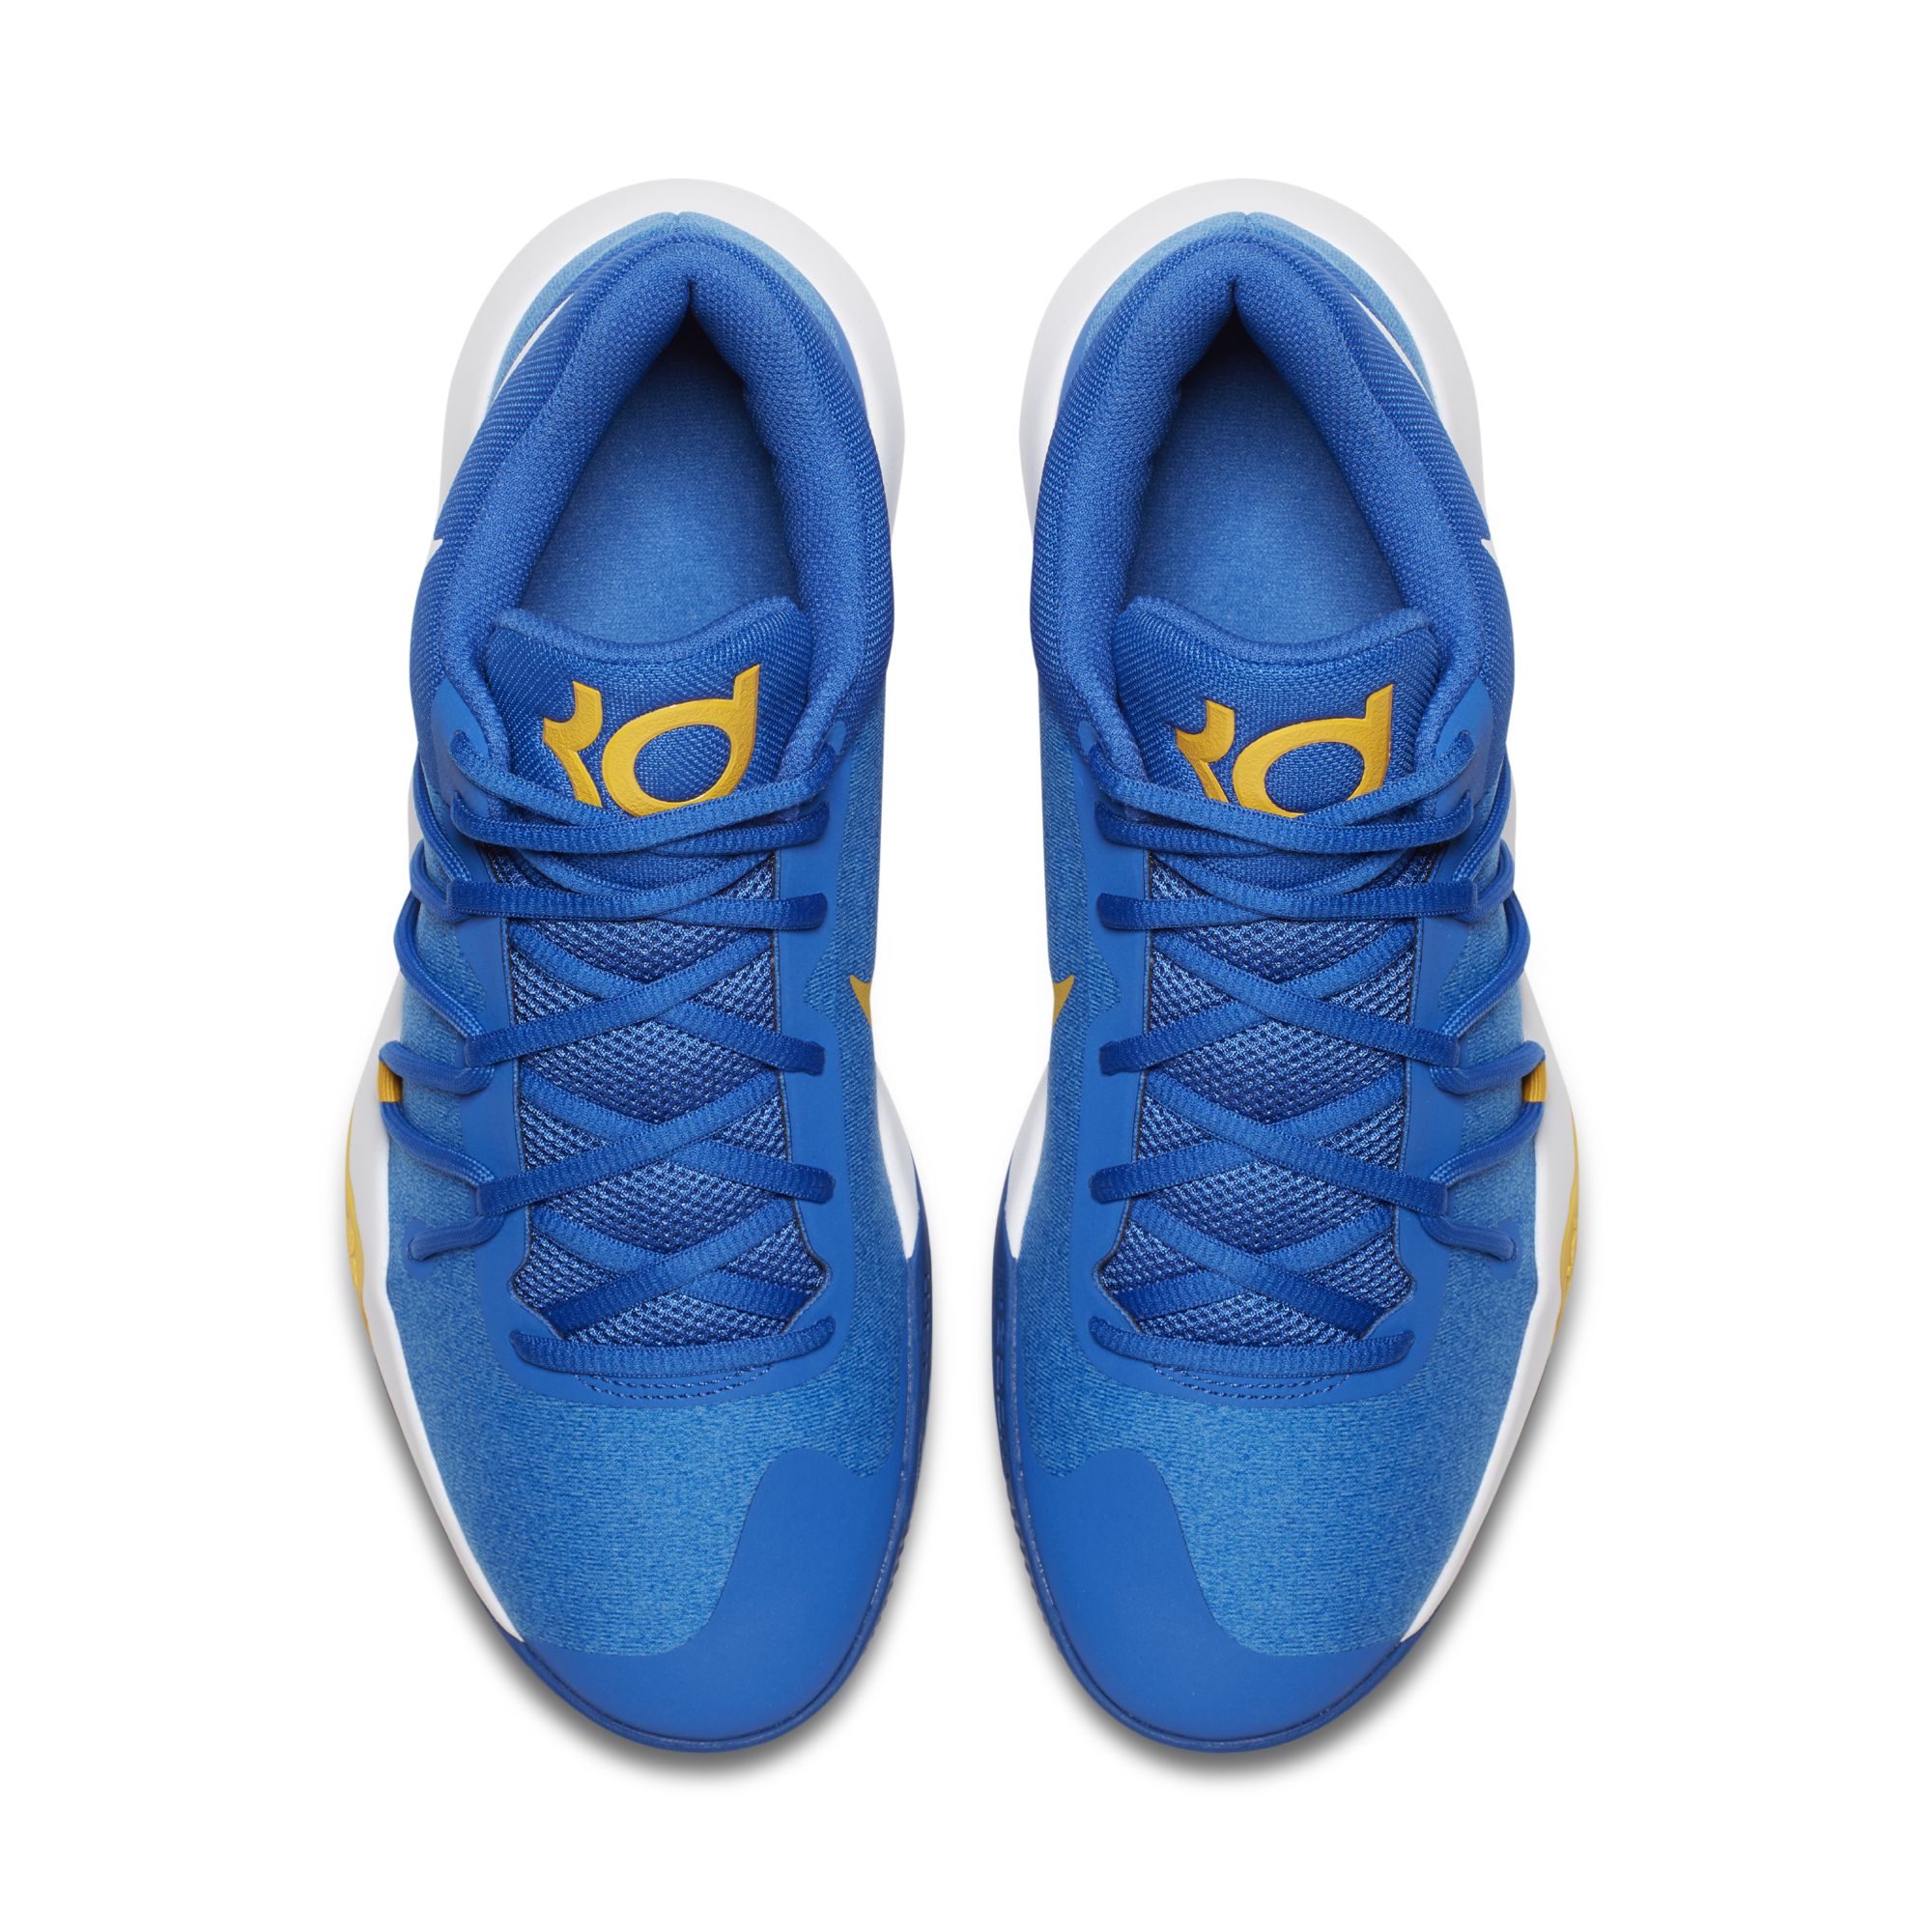 Nike KD Trey 5 V "Warriors"